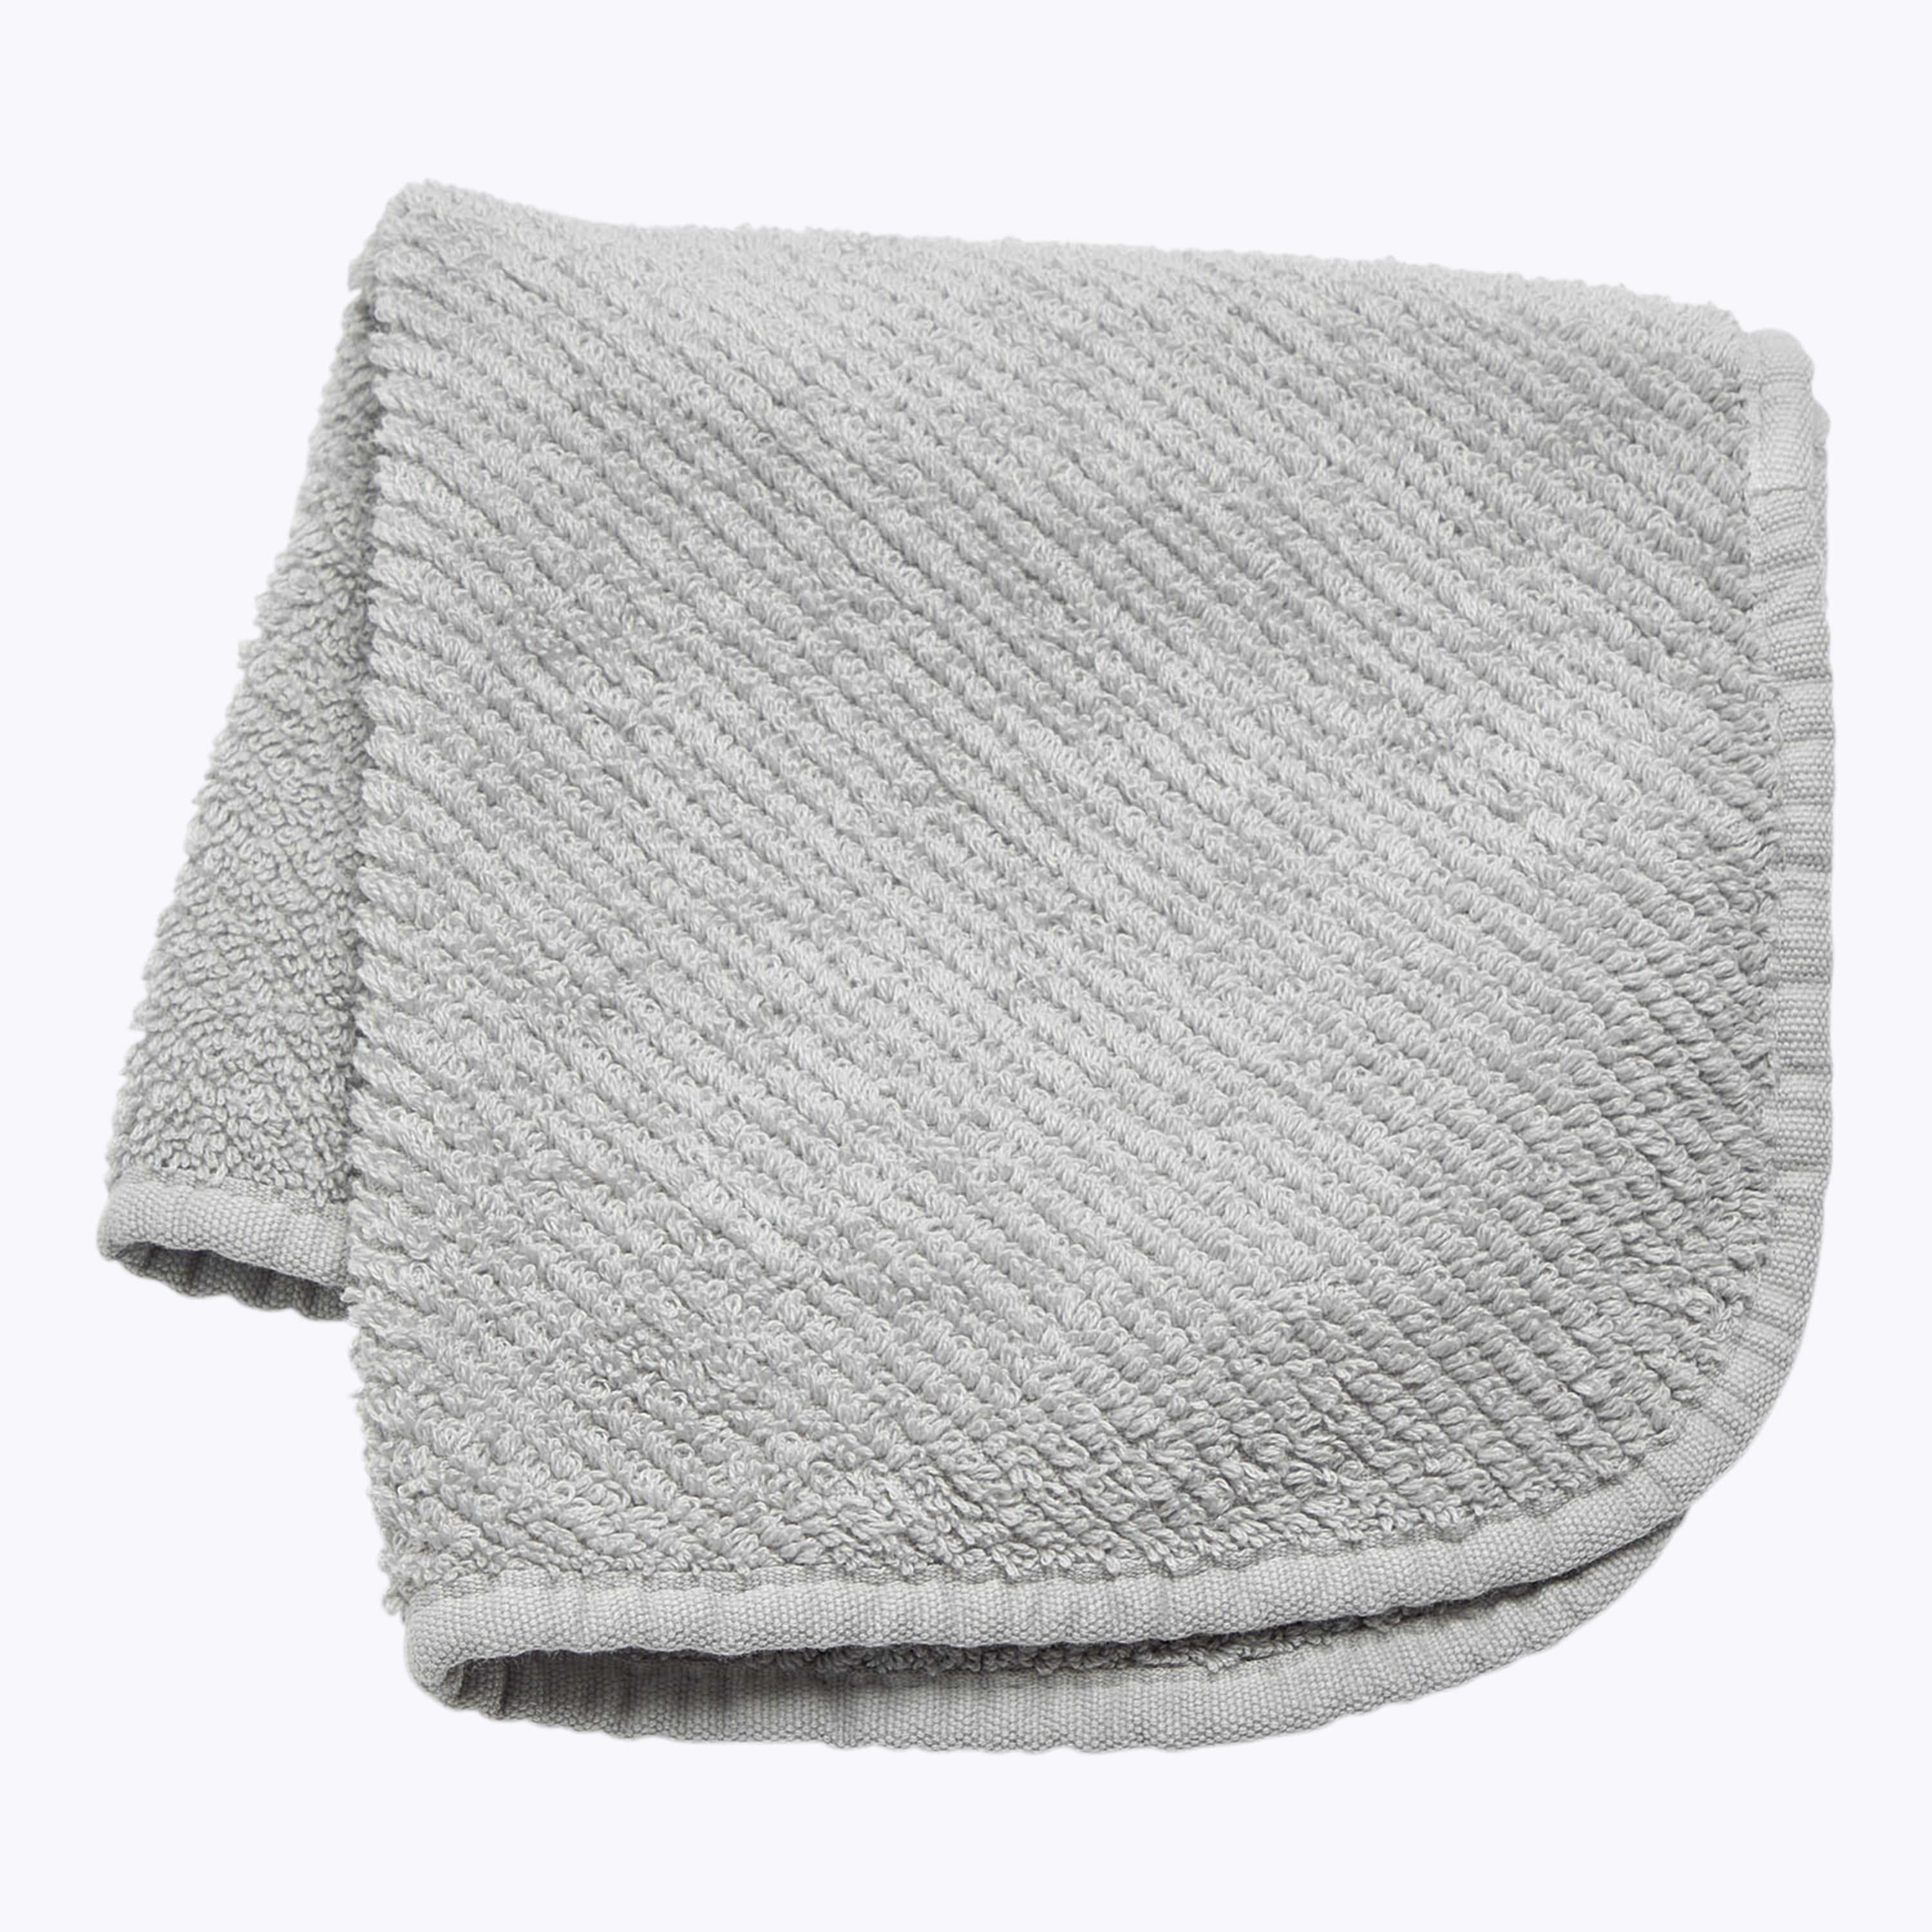 Twill Bath Towels, Platinum